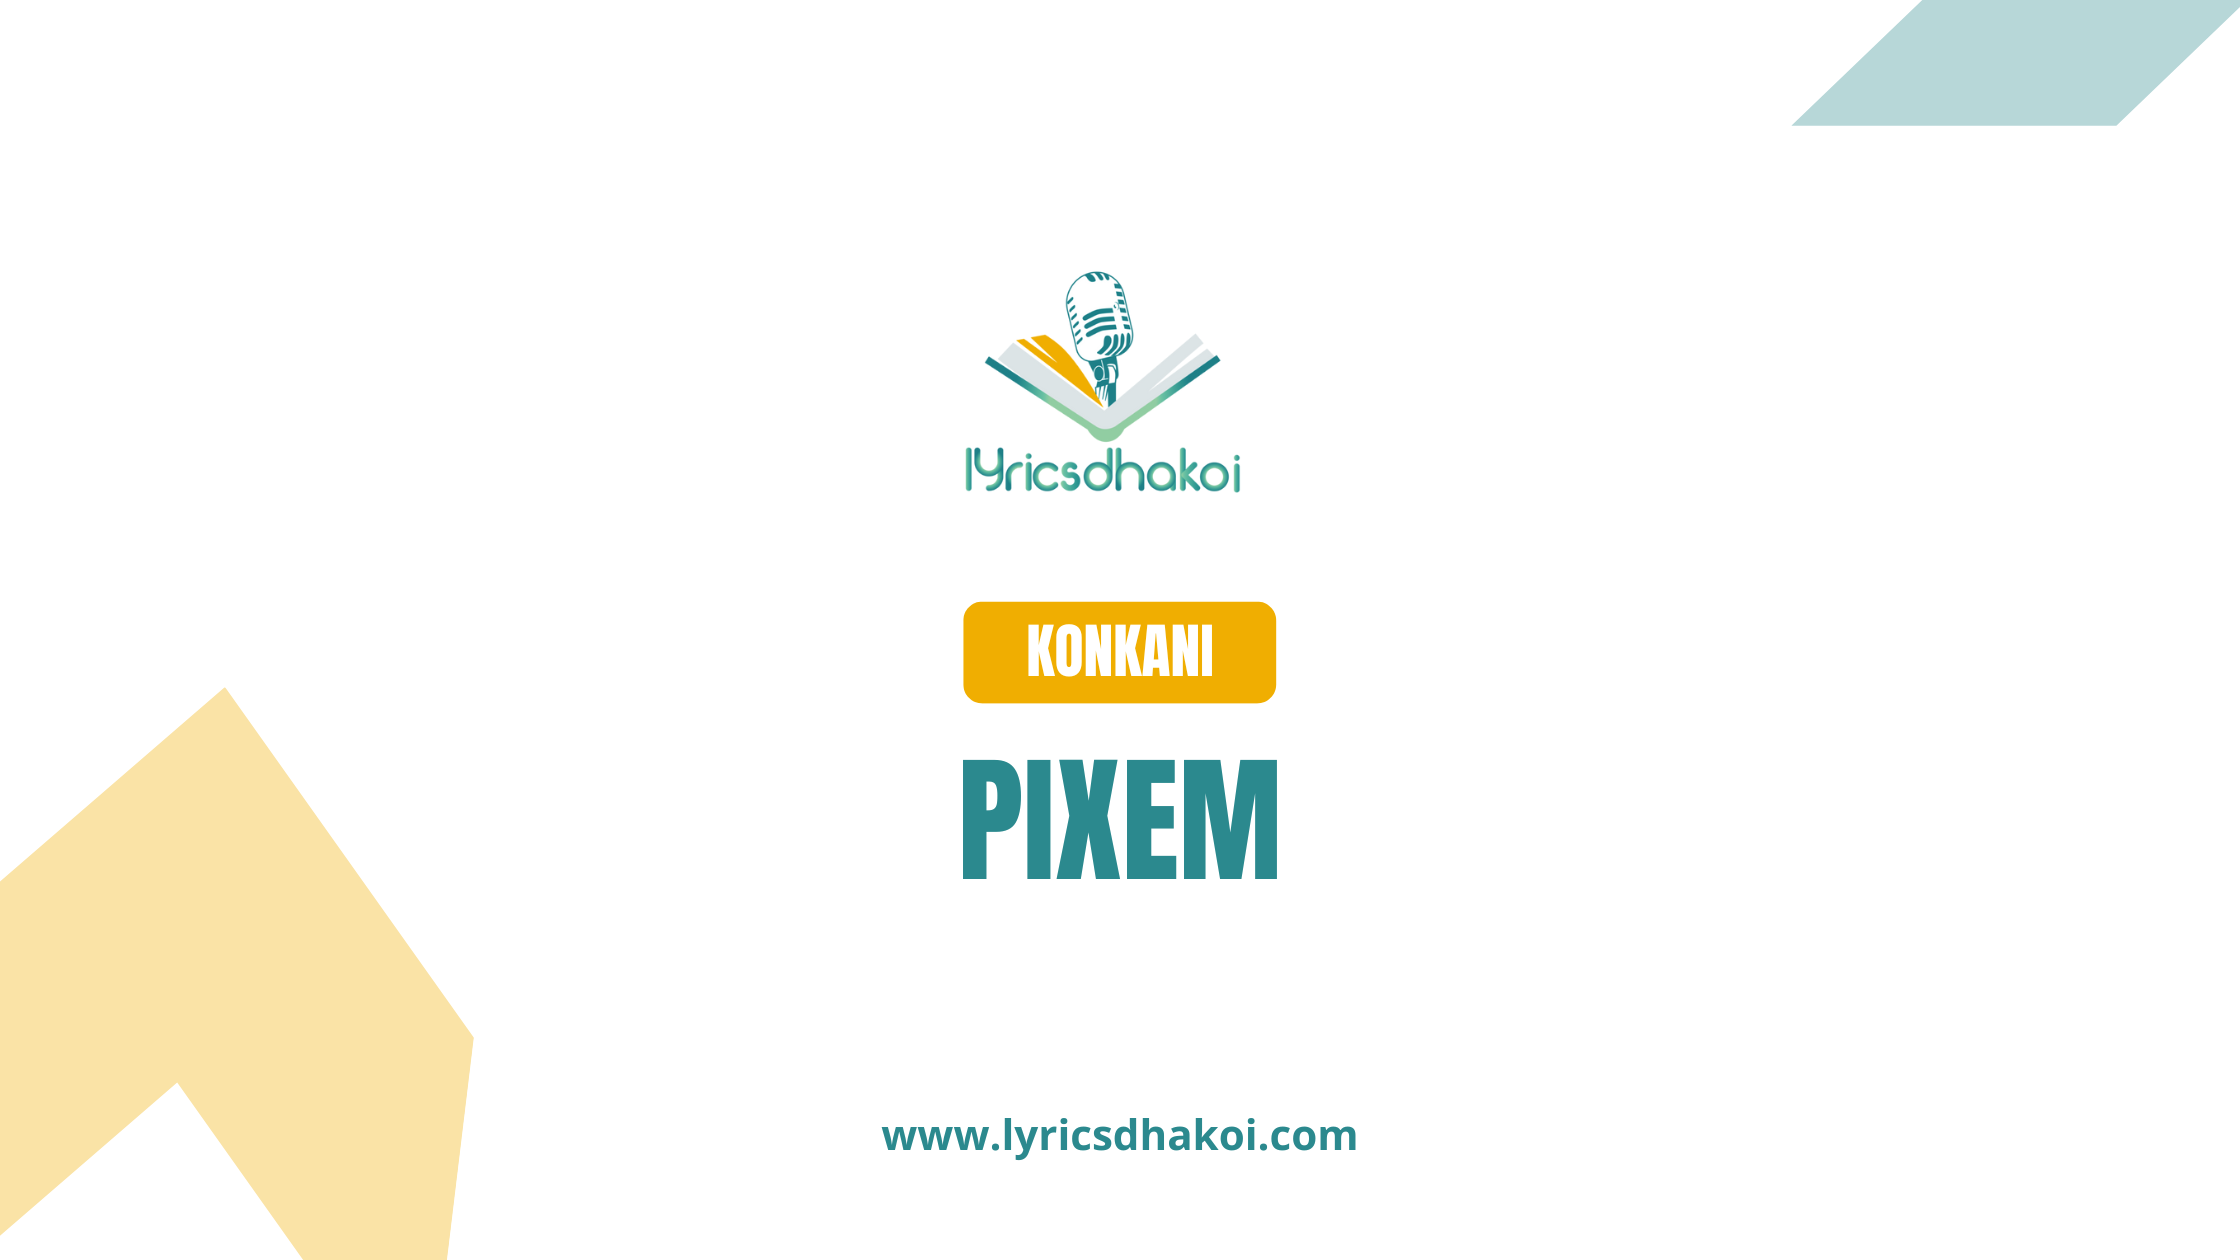 Pixem Konkani Lyrics for Karaoke Online - LyricsDhakoi.com